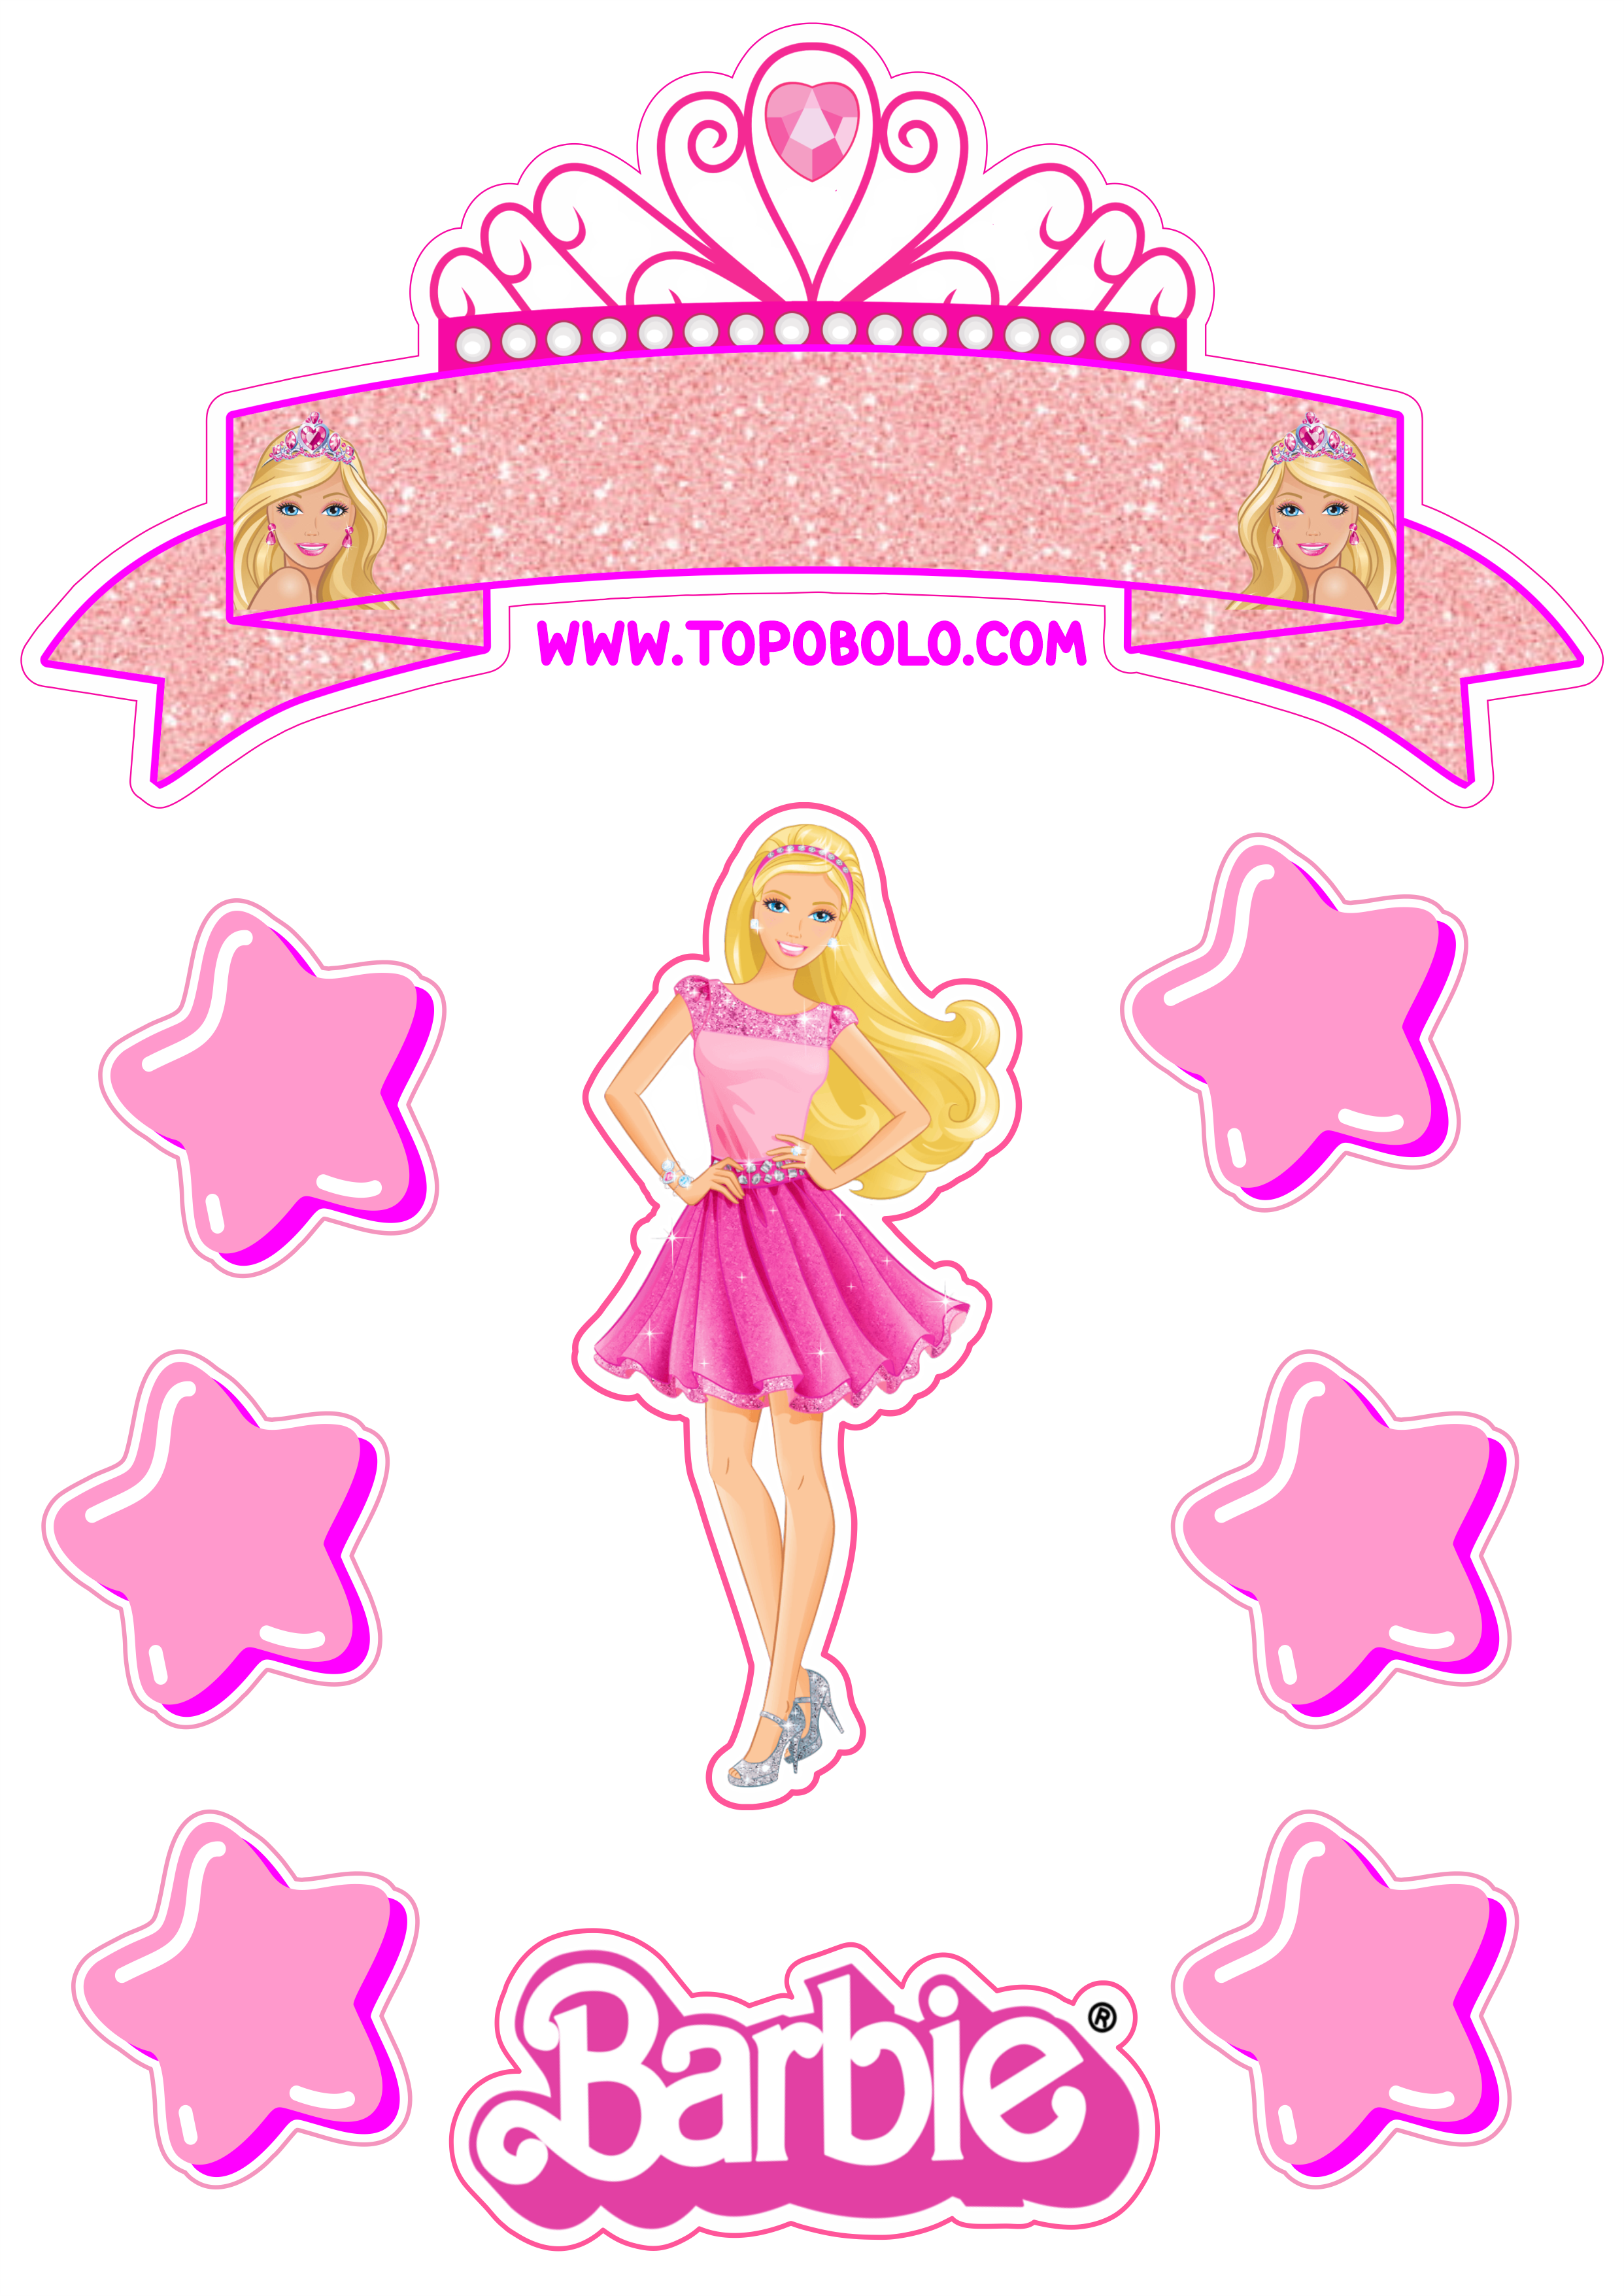 Topo de bolo para imprimir boneca Barbie festa de aniversário rosa menina estrelas png